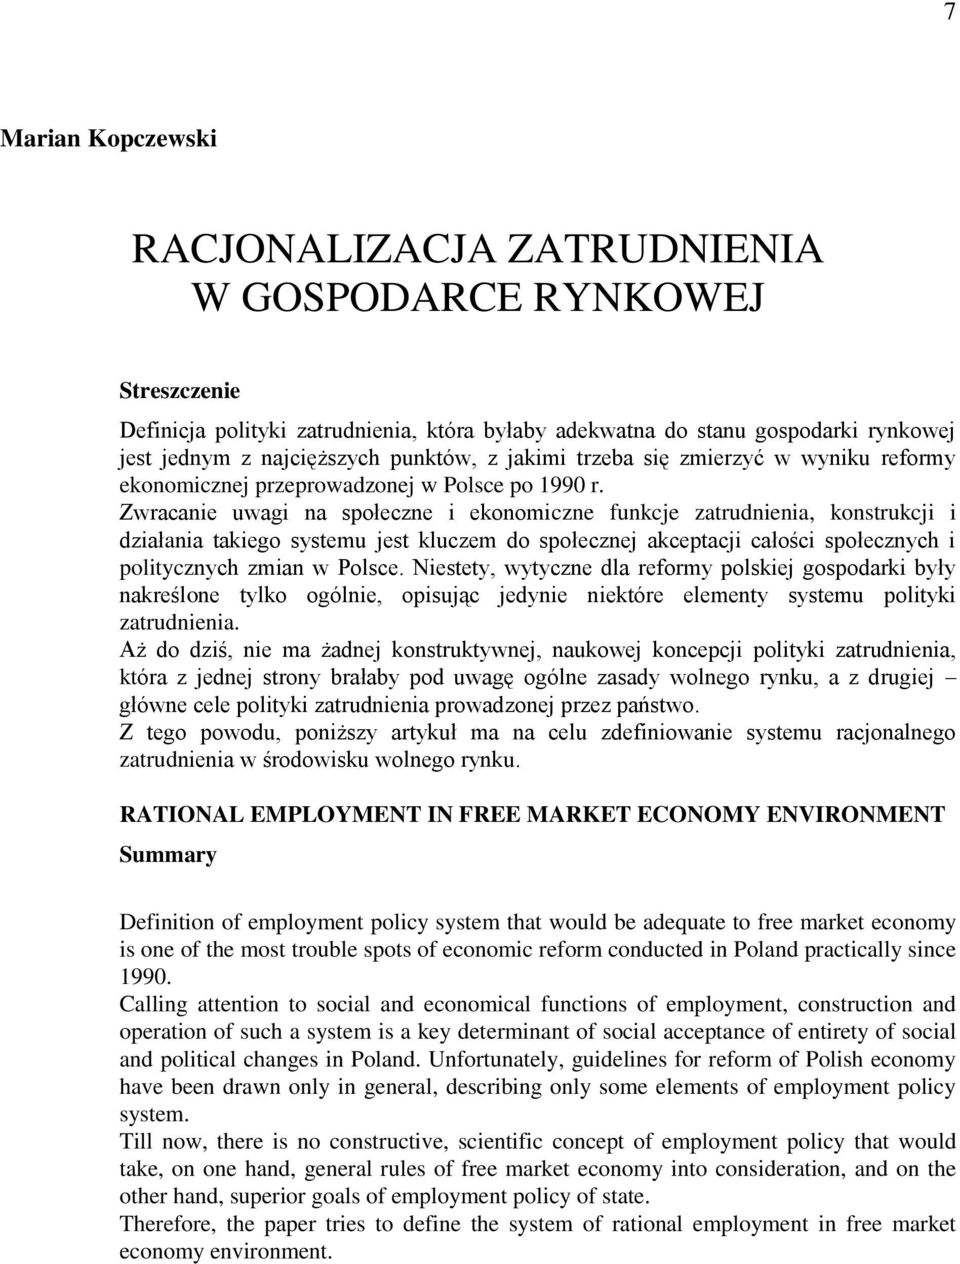 Zwracanie uwagi na społeczne i ekonomiczne funkcje zatrudnienia, konstrukcji i działania takiego systemu jest kluczem do społecznej akceptacji całości społecznych i politycznych zmian w Polsce.